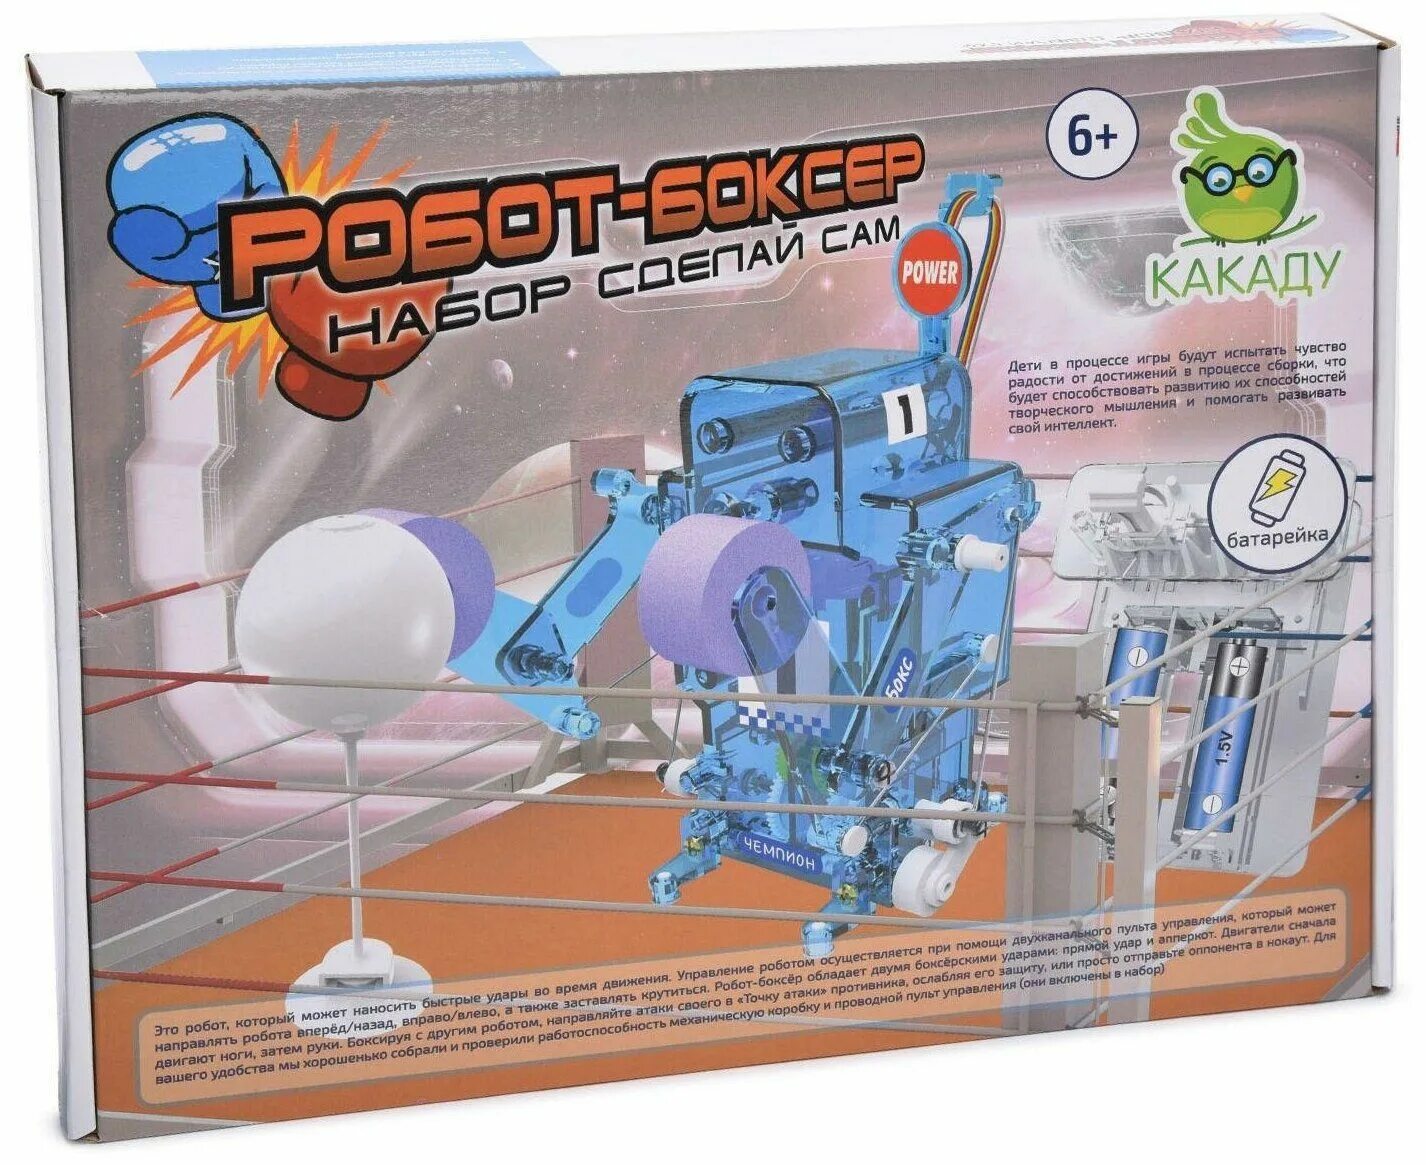 Конструктор: робот-боксер. Электромеханический конструктор Ocie 20003264 робот-боксер. Наборы роботов для детей. Робот боксер игрушка. Купить набор робота